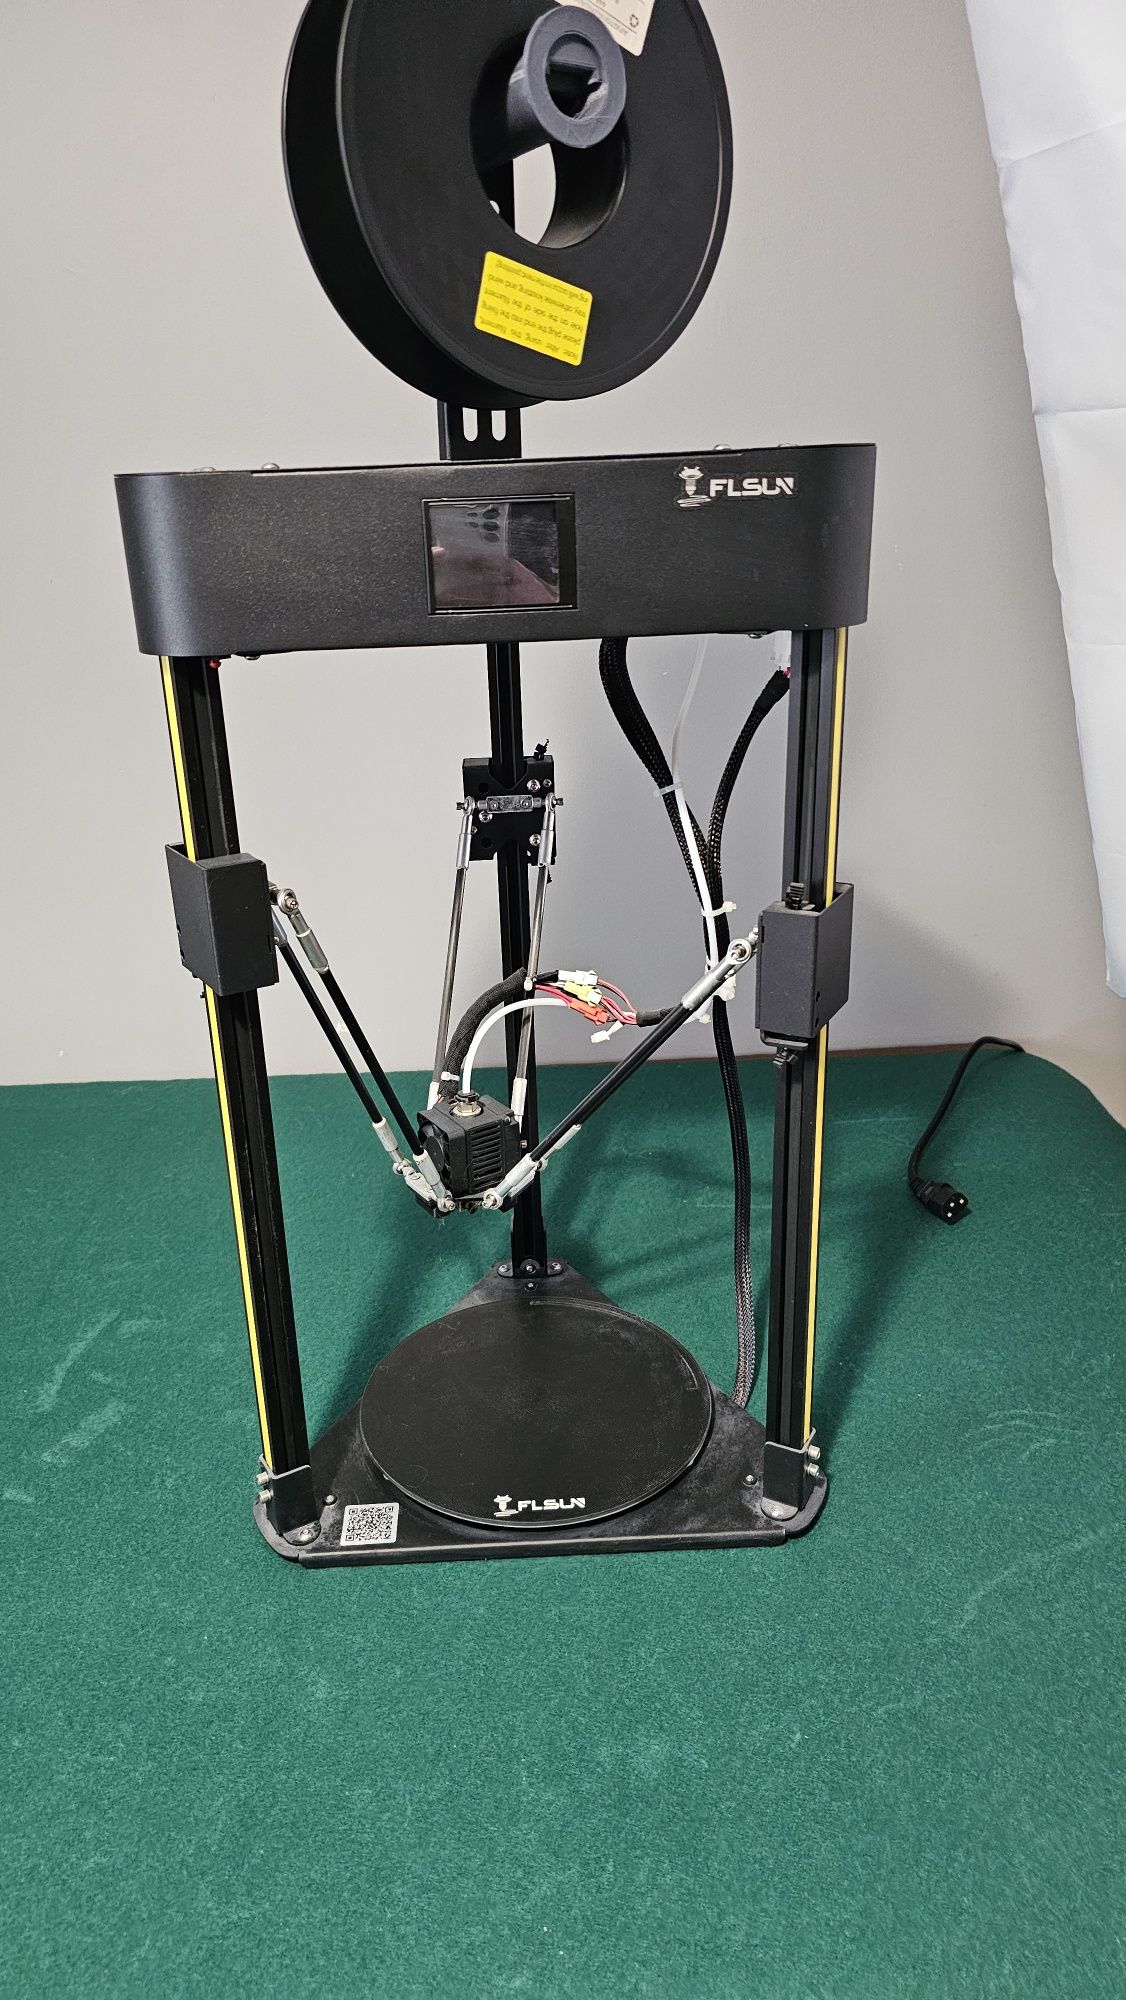 Impressora 3D - Flsun Q5